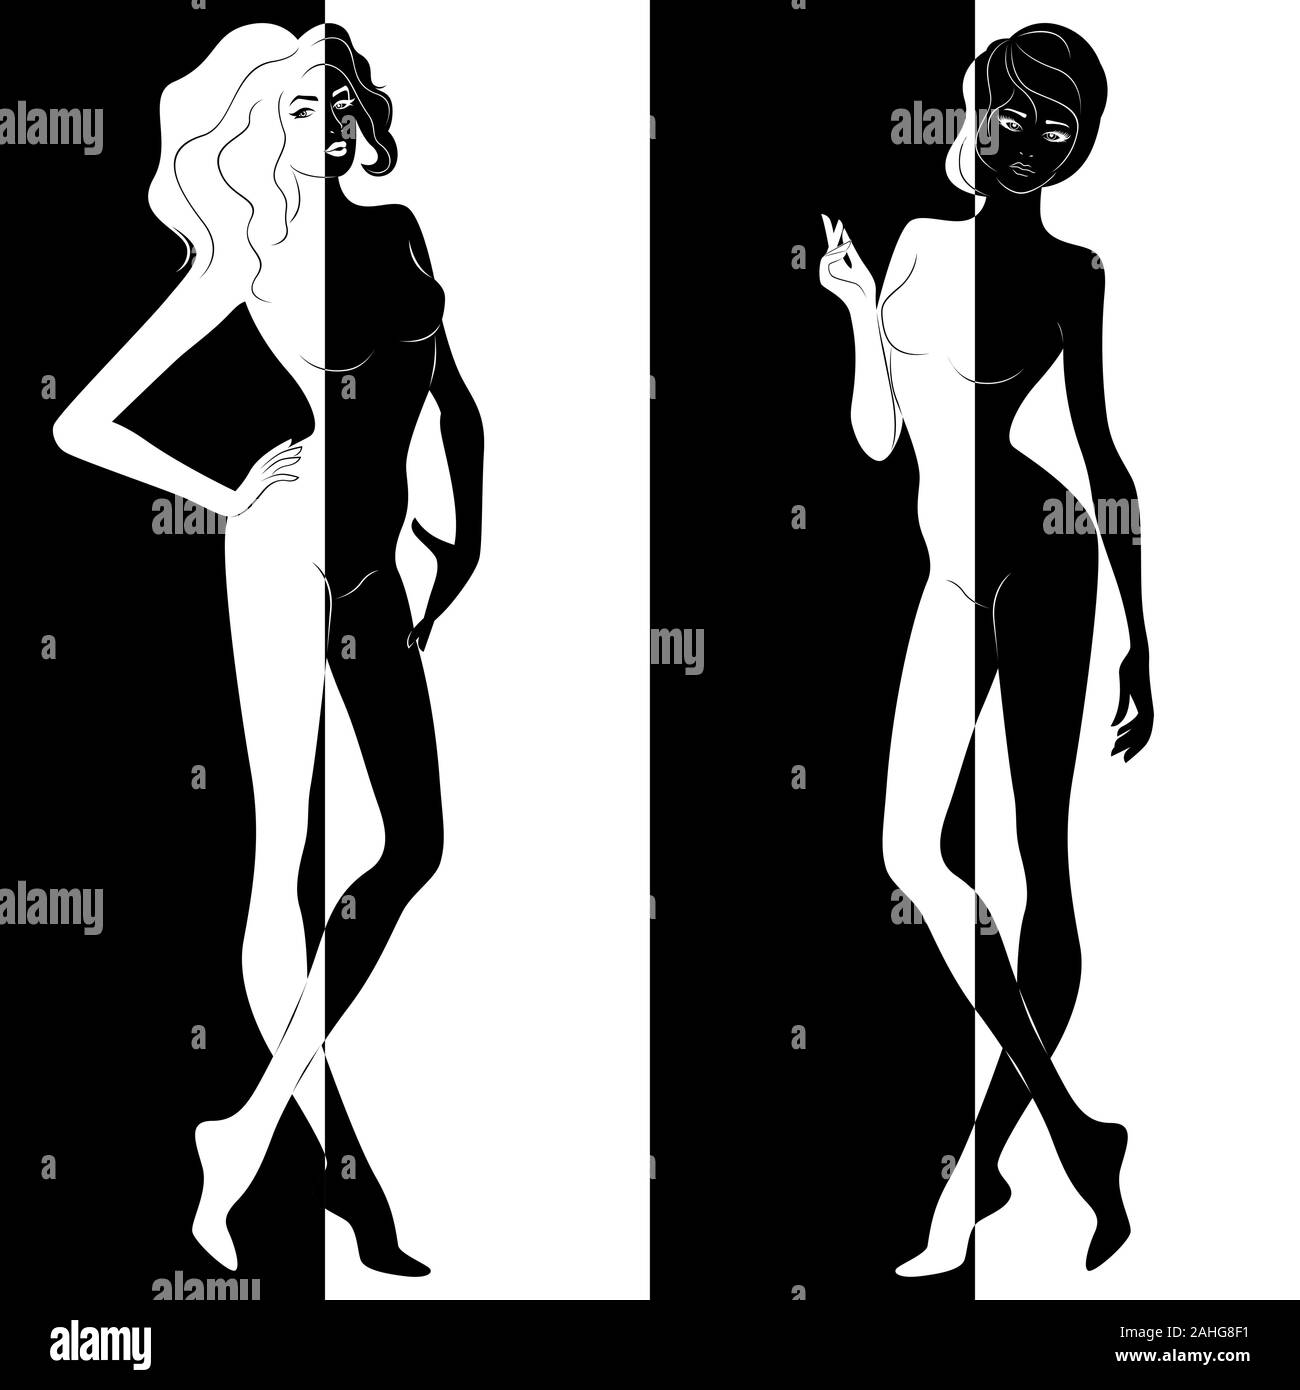 Zusammenfassung von zwei attraktive Frauen in negativen und positiven Raum Split, Schwarze und Weiße konzeptionelle Ausdruck, hand Zeichnung Abbildung Stock Vektor